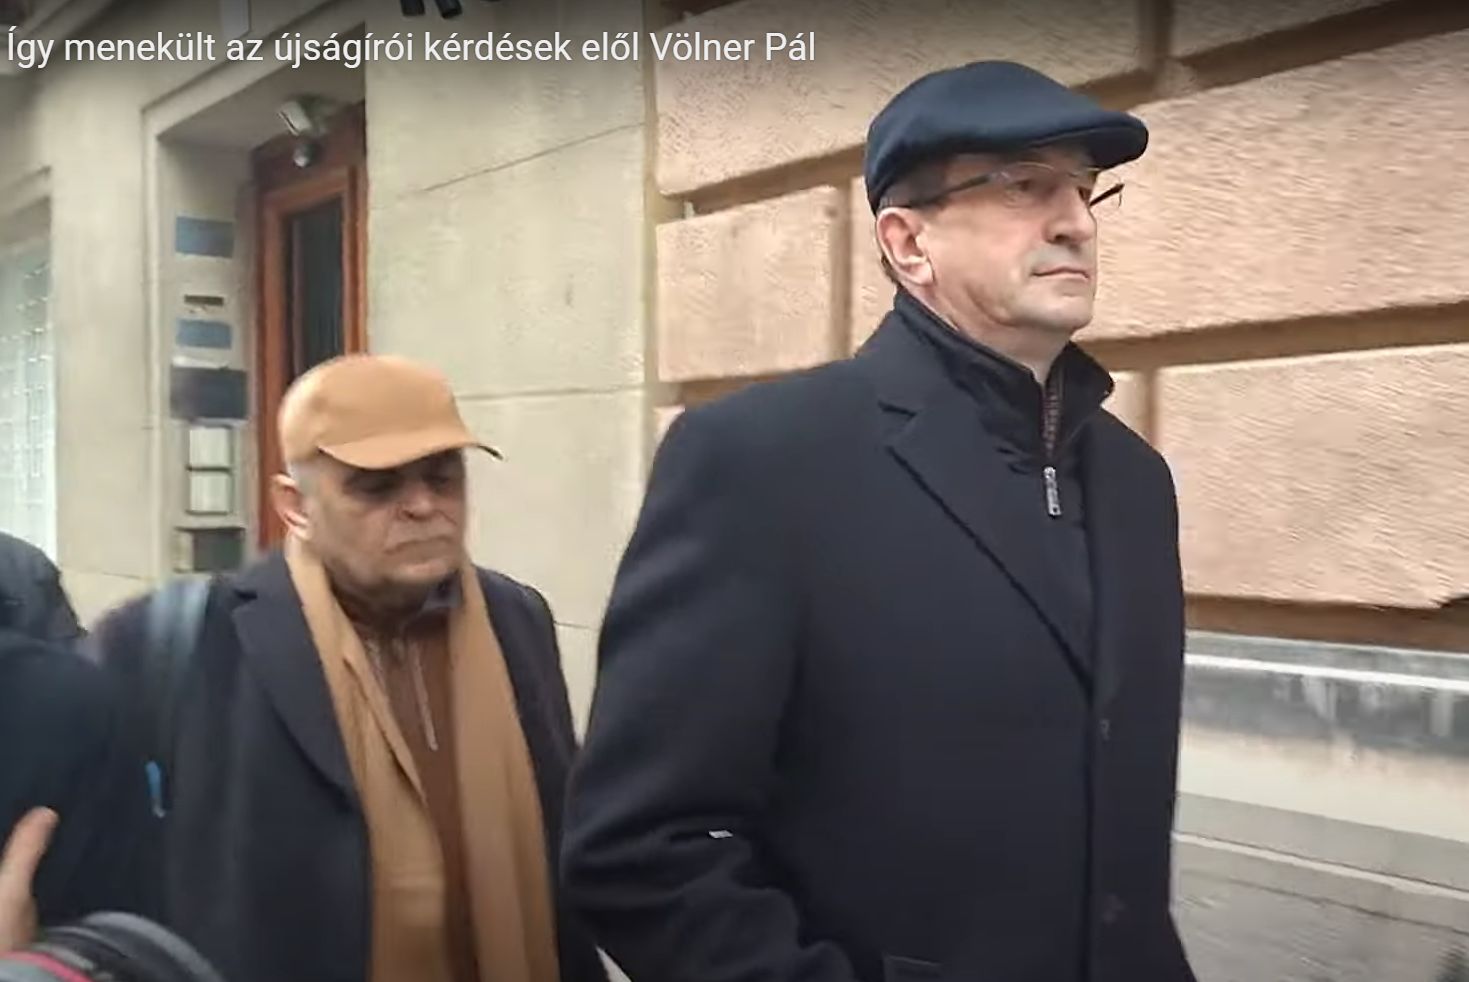 Így menekült Völner Pál az újságírói kérdések elől 